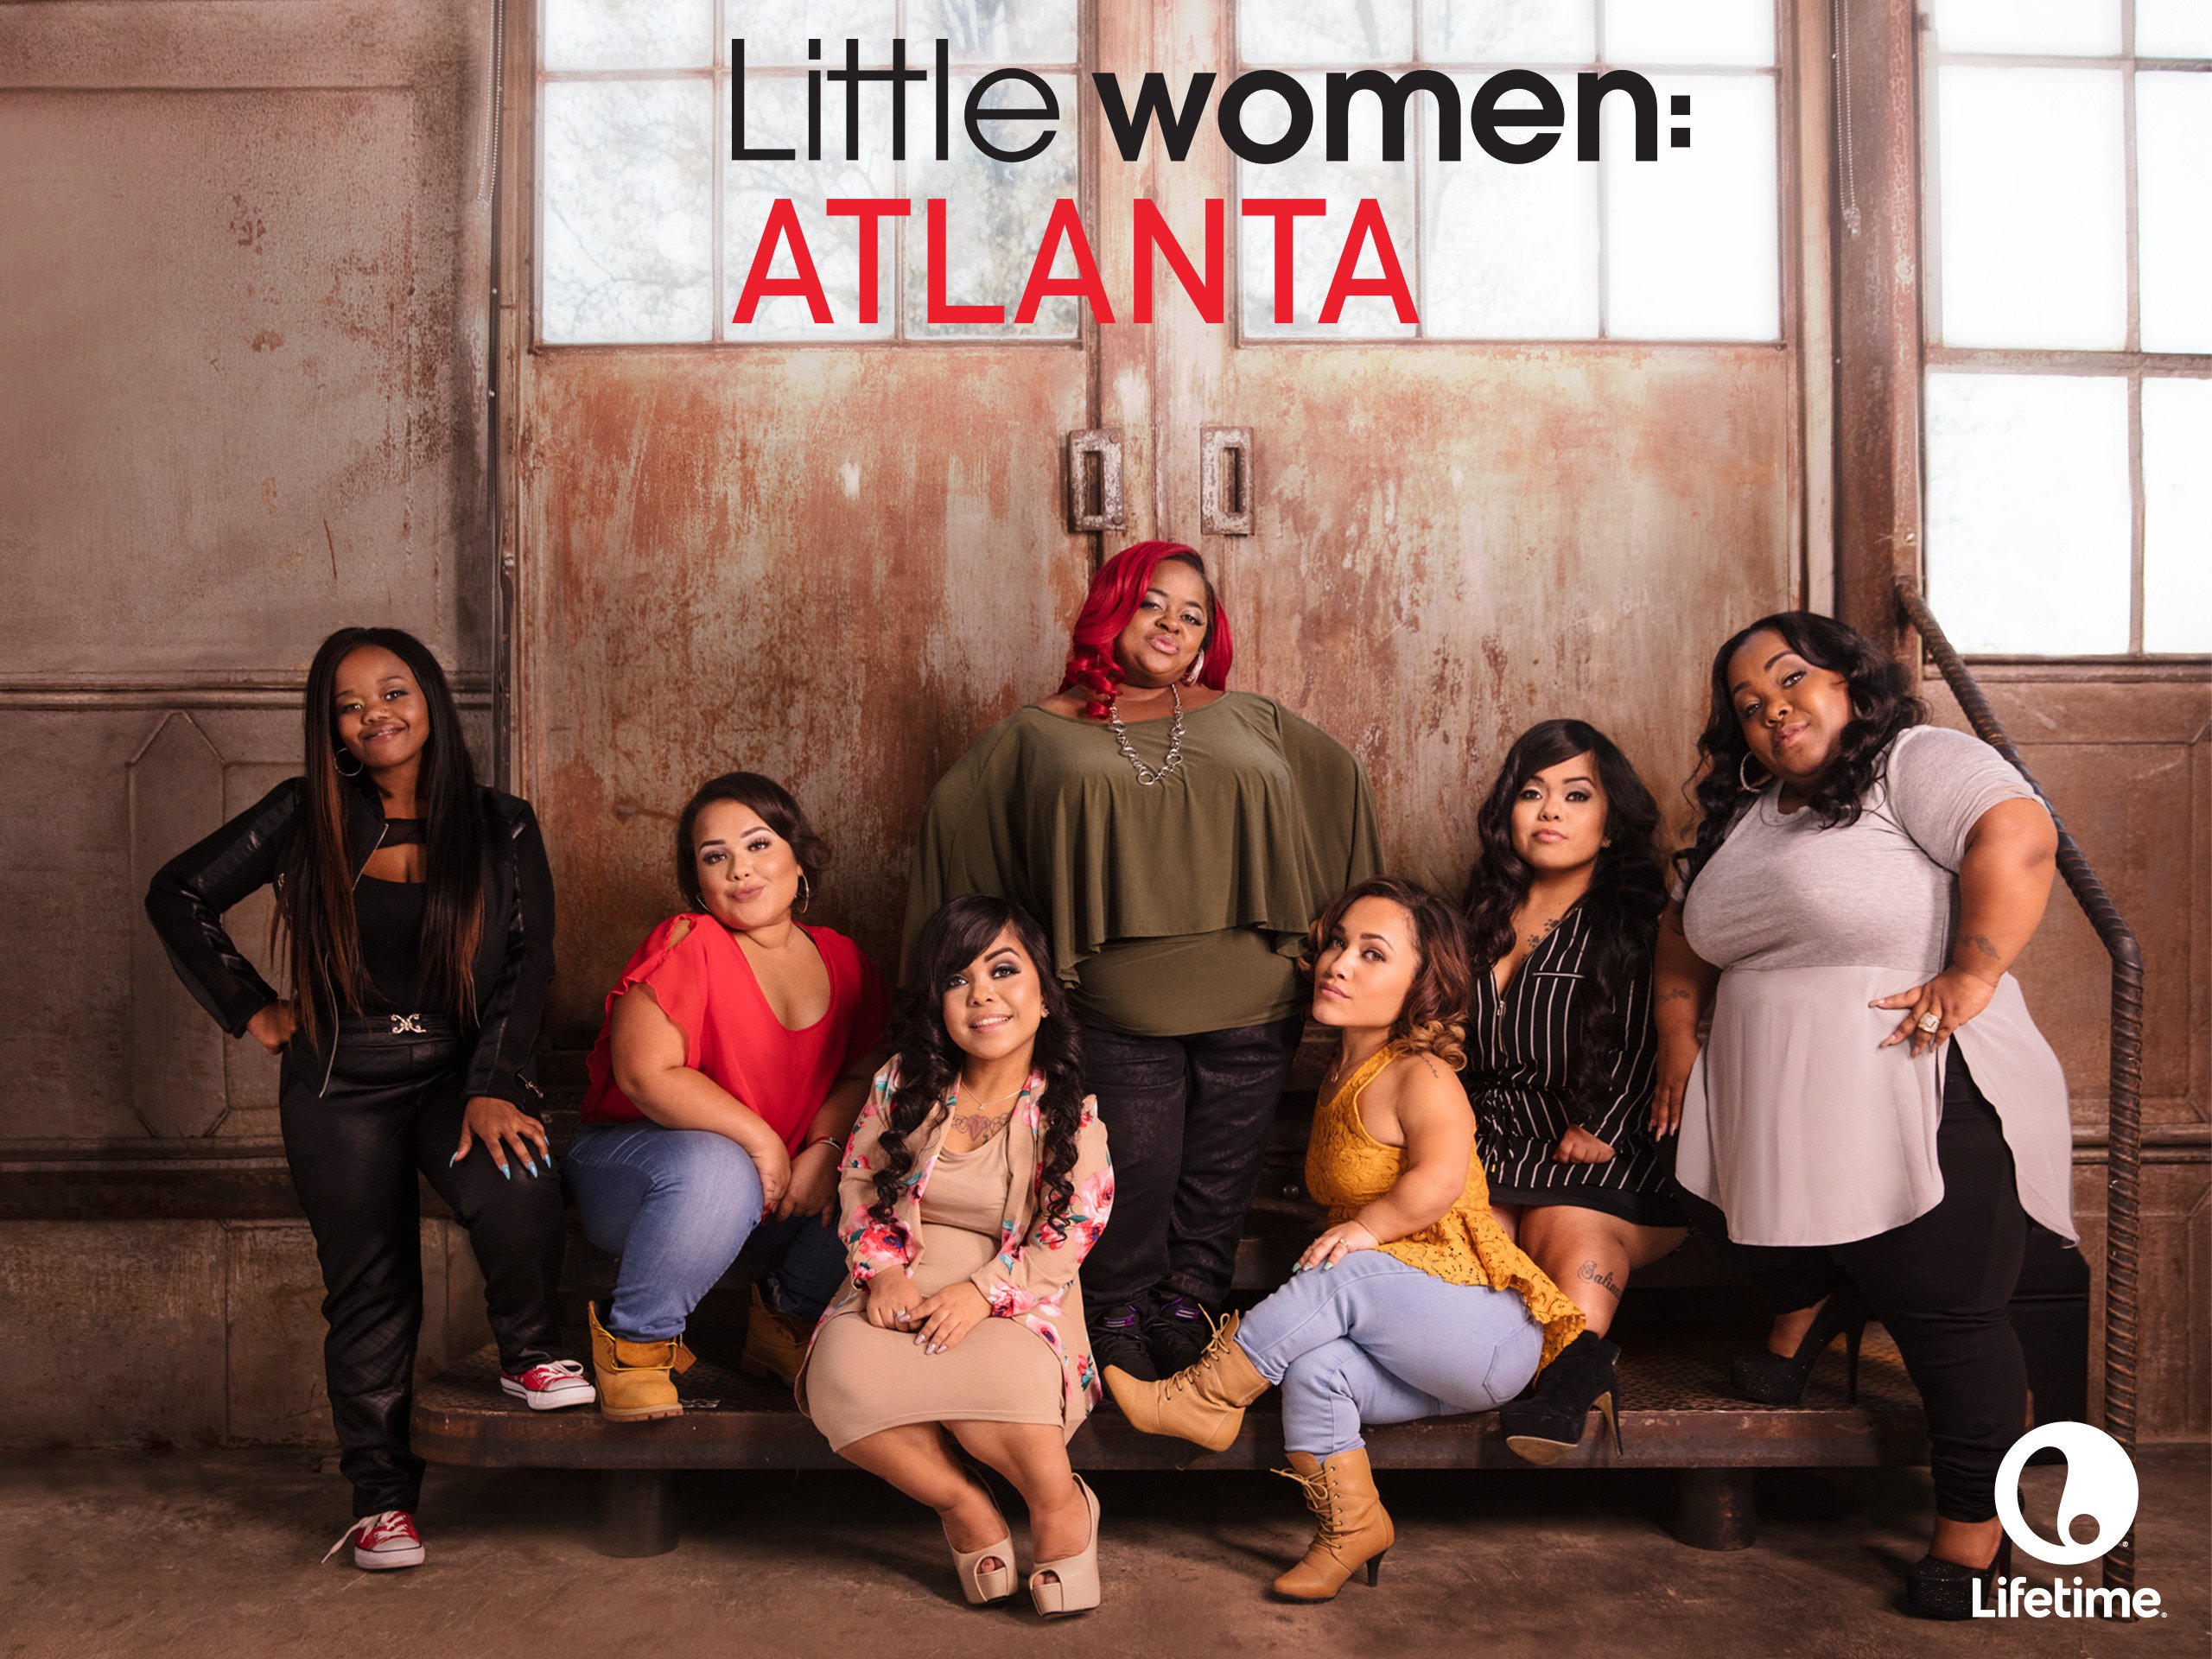 Women atlanta tanya little Little Women